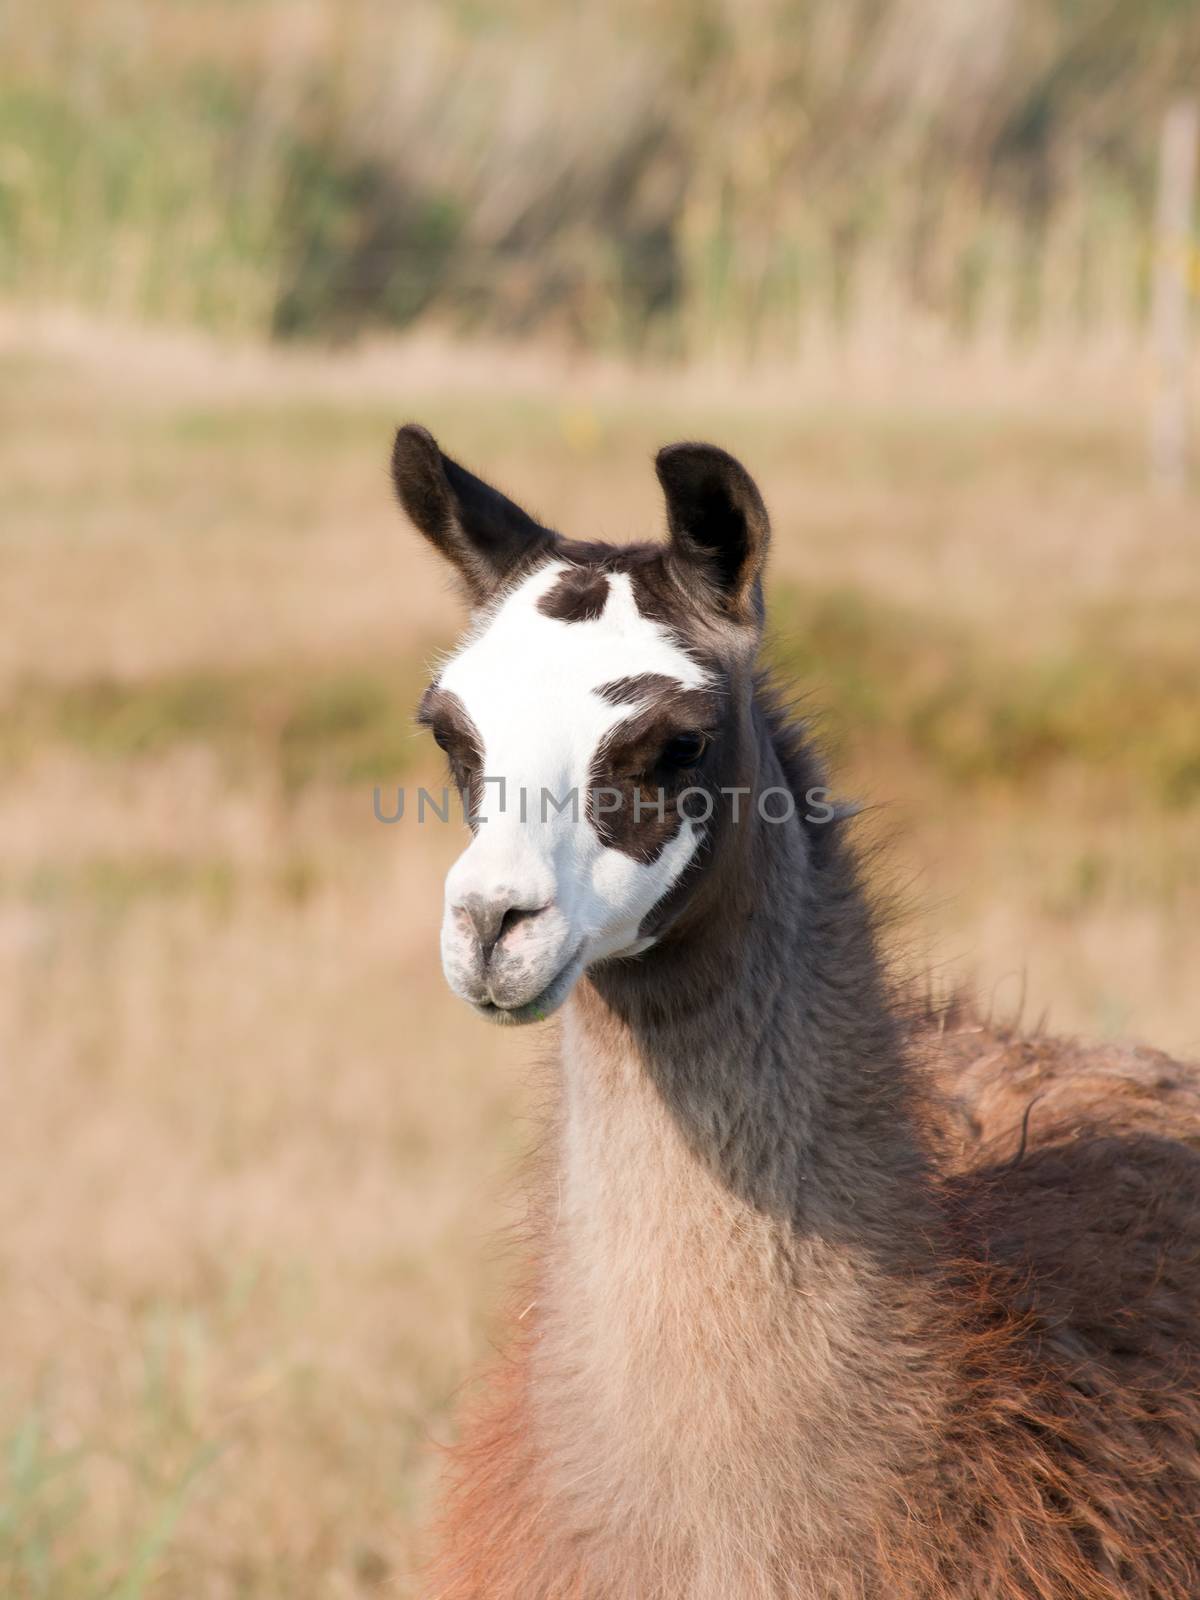 Llama (Lama glama) by dadalia